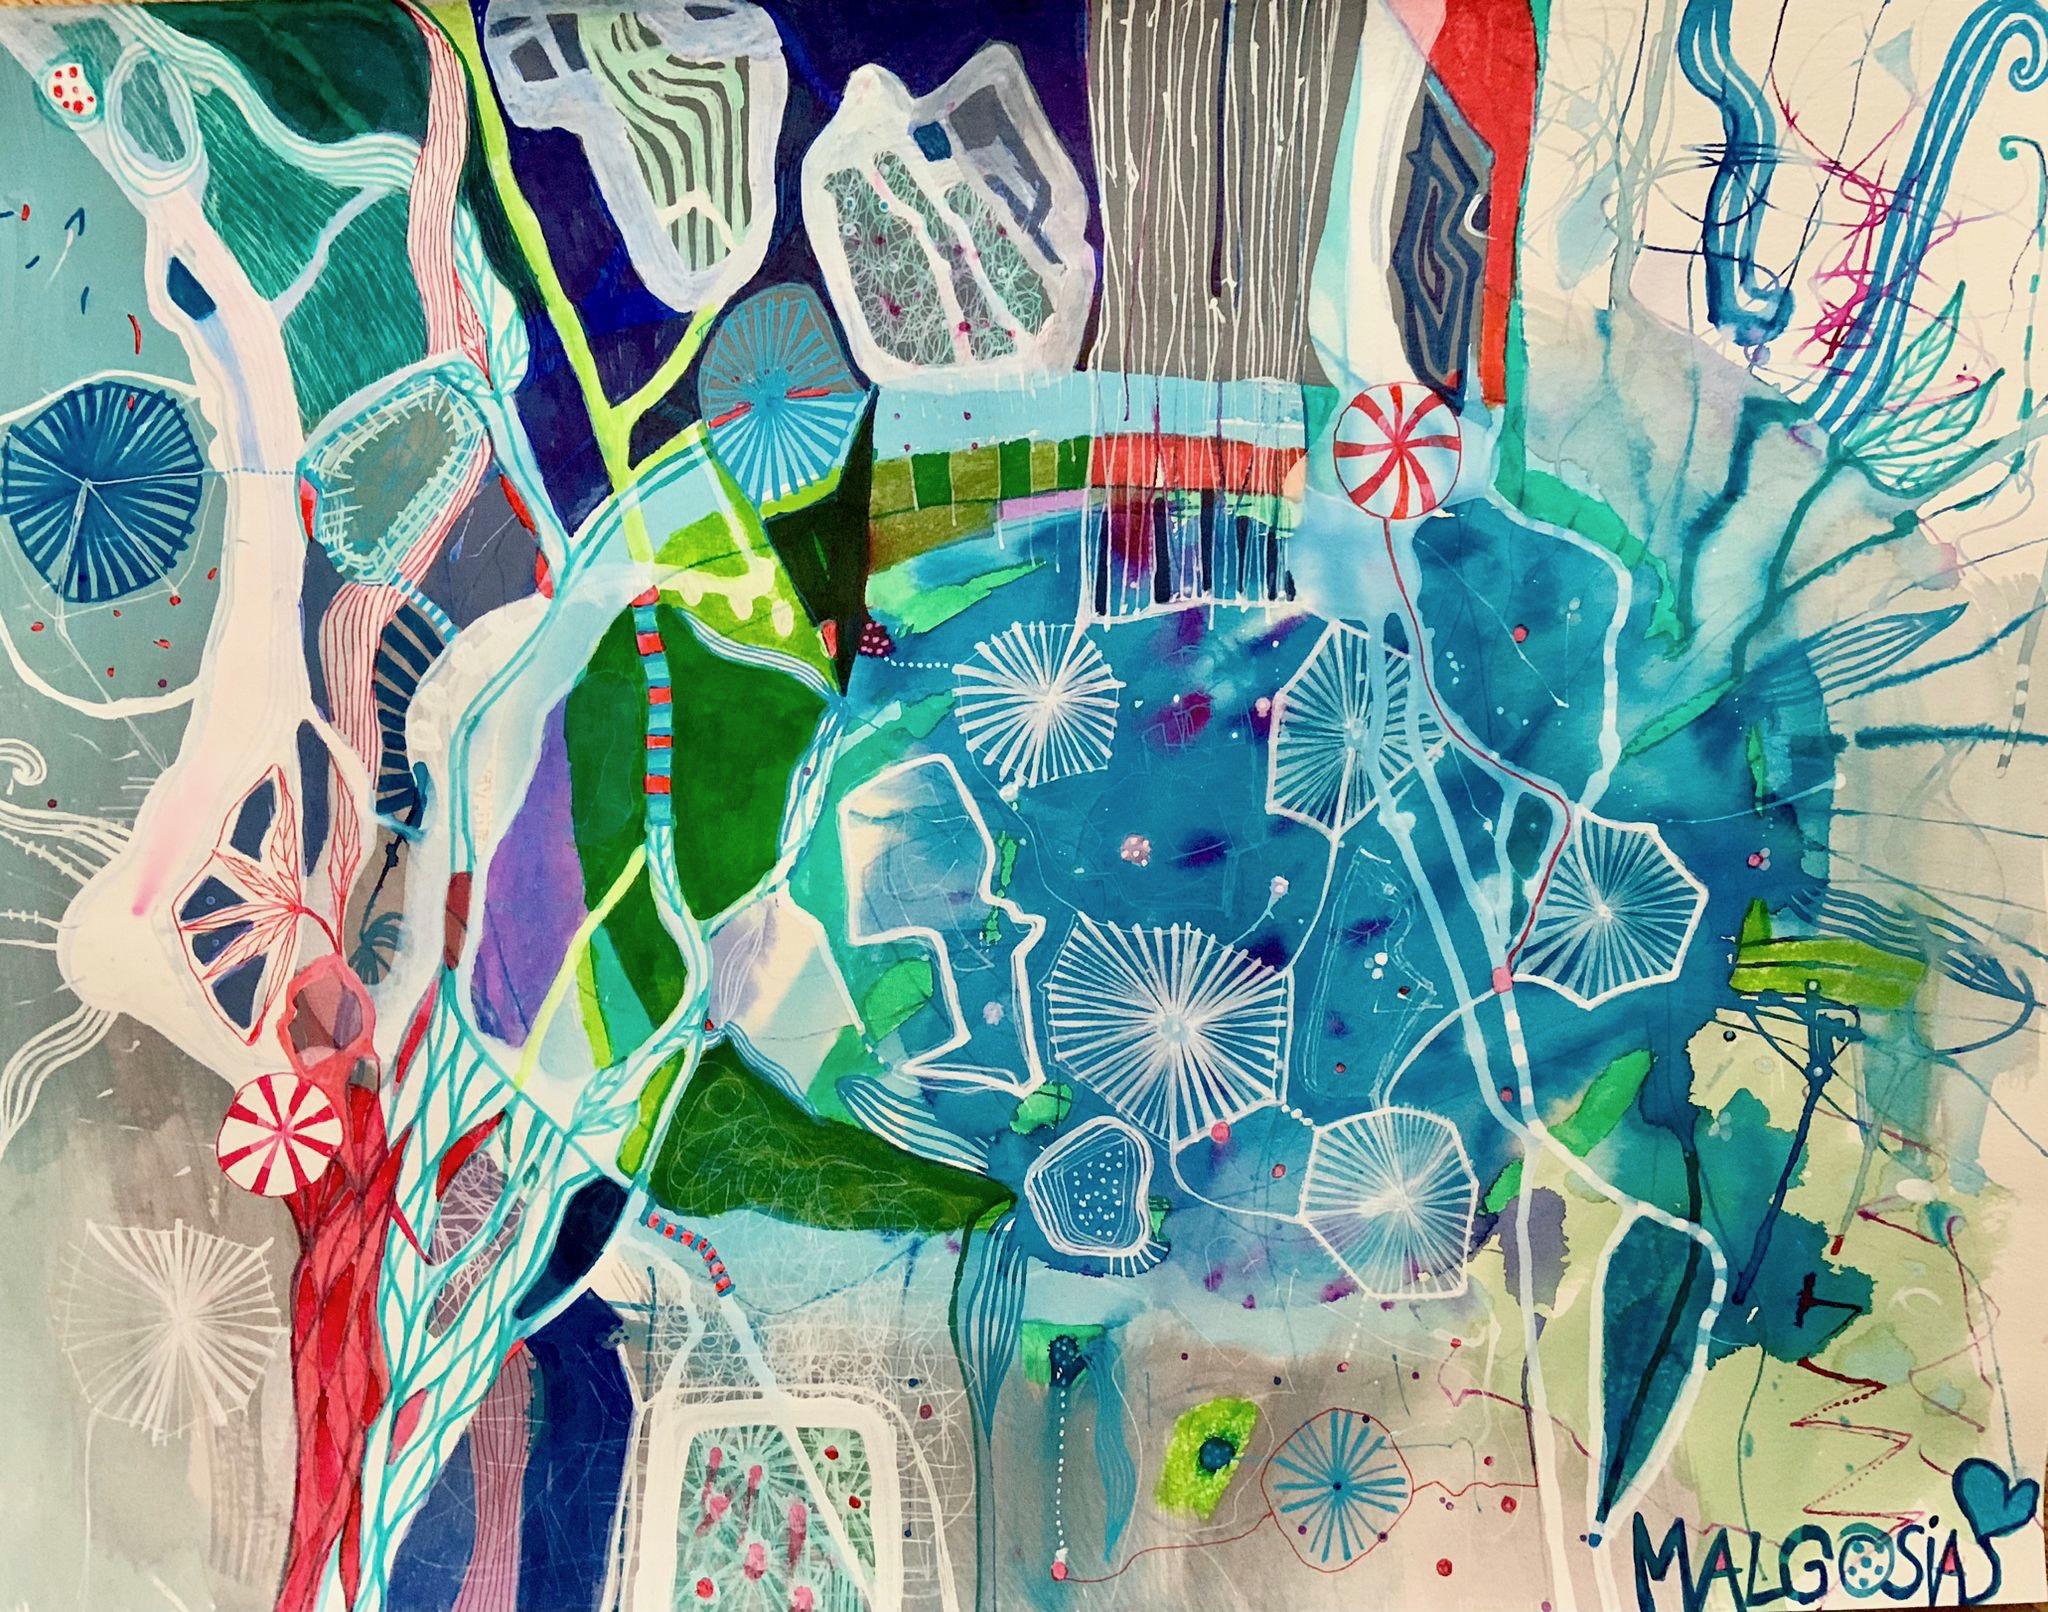 Diving In The Blue Abstrakt auf Papier (Abstrakter Expressionismus), Mixed Media Art, von Malgosia Kiernozycka